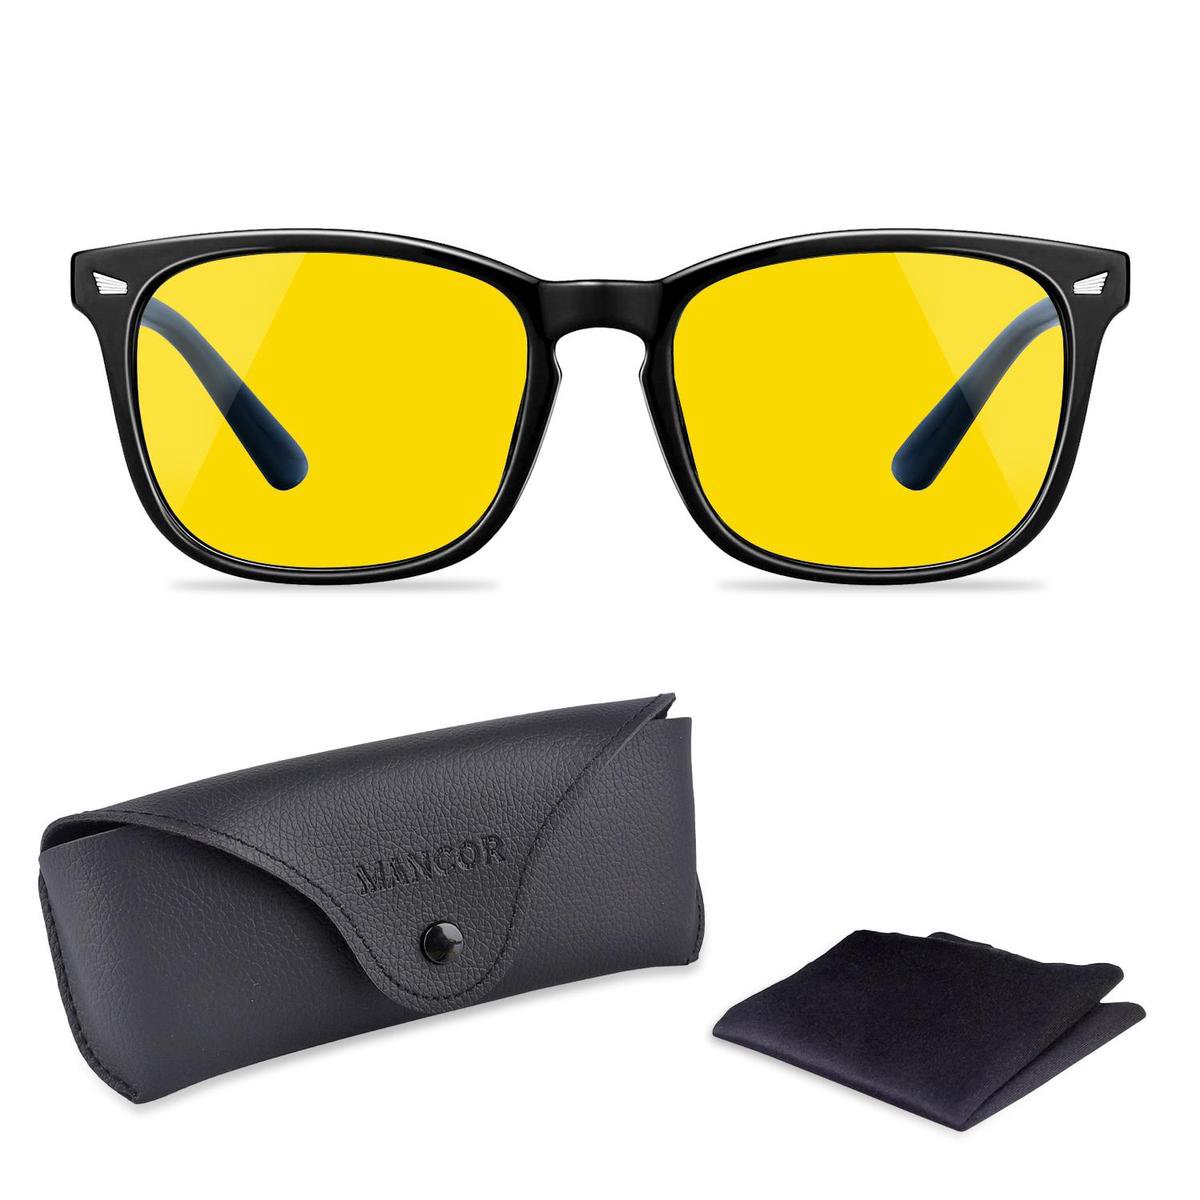 Nachtbril Auto Voor Veilig Rijden in het Donker Autobril - Bril Tegen Felle Koplampen - Unisex - Zwart